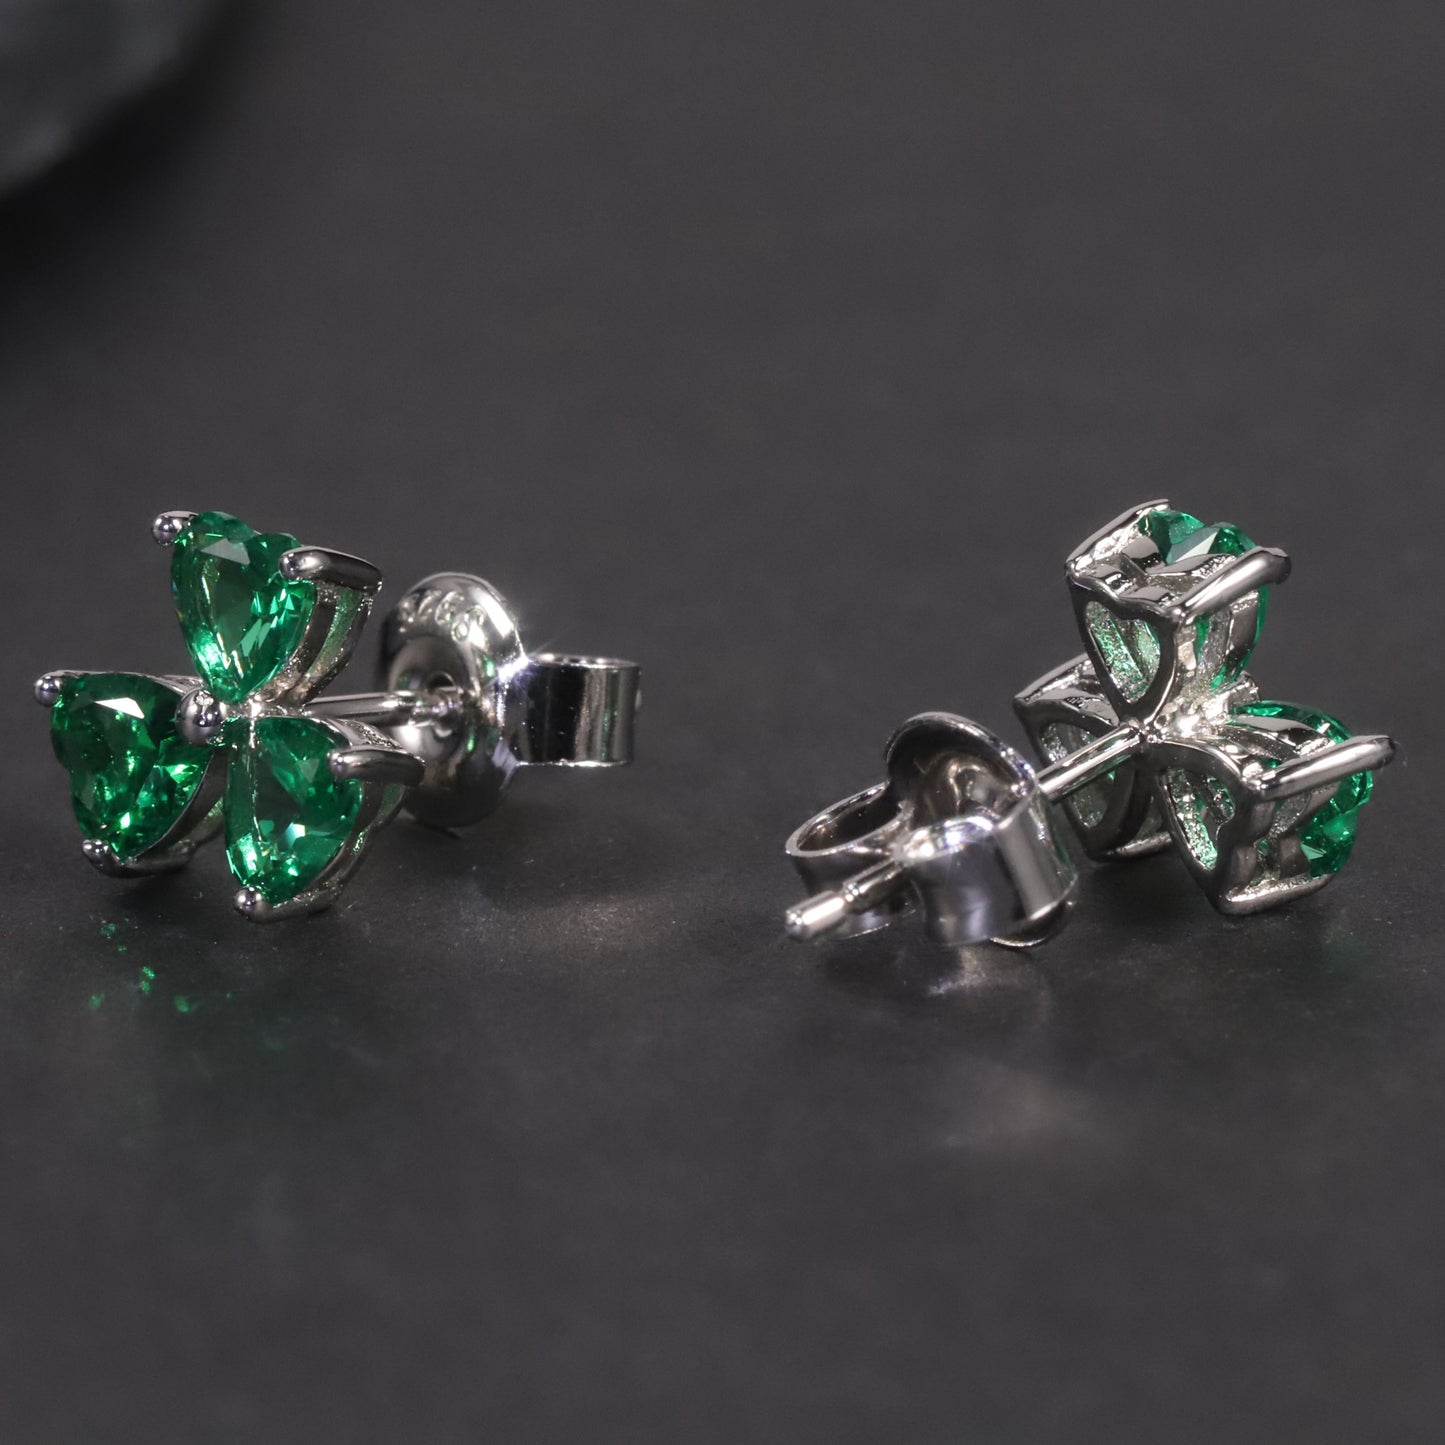 Flower Shape Stud Earrings in Sterling Silver -  Emerald